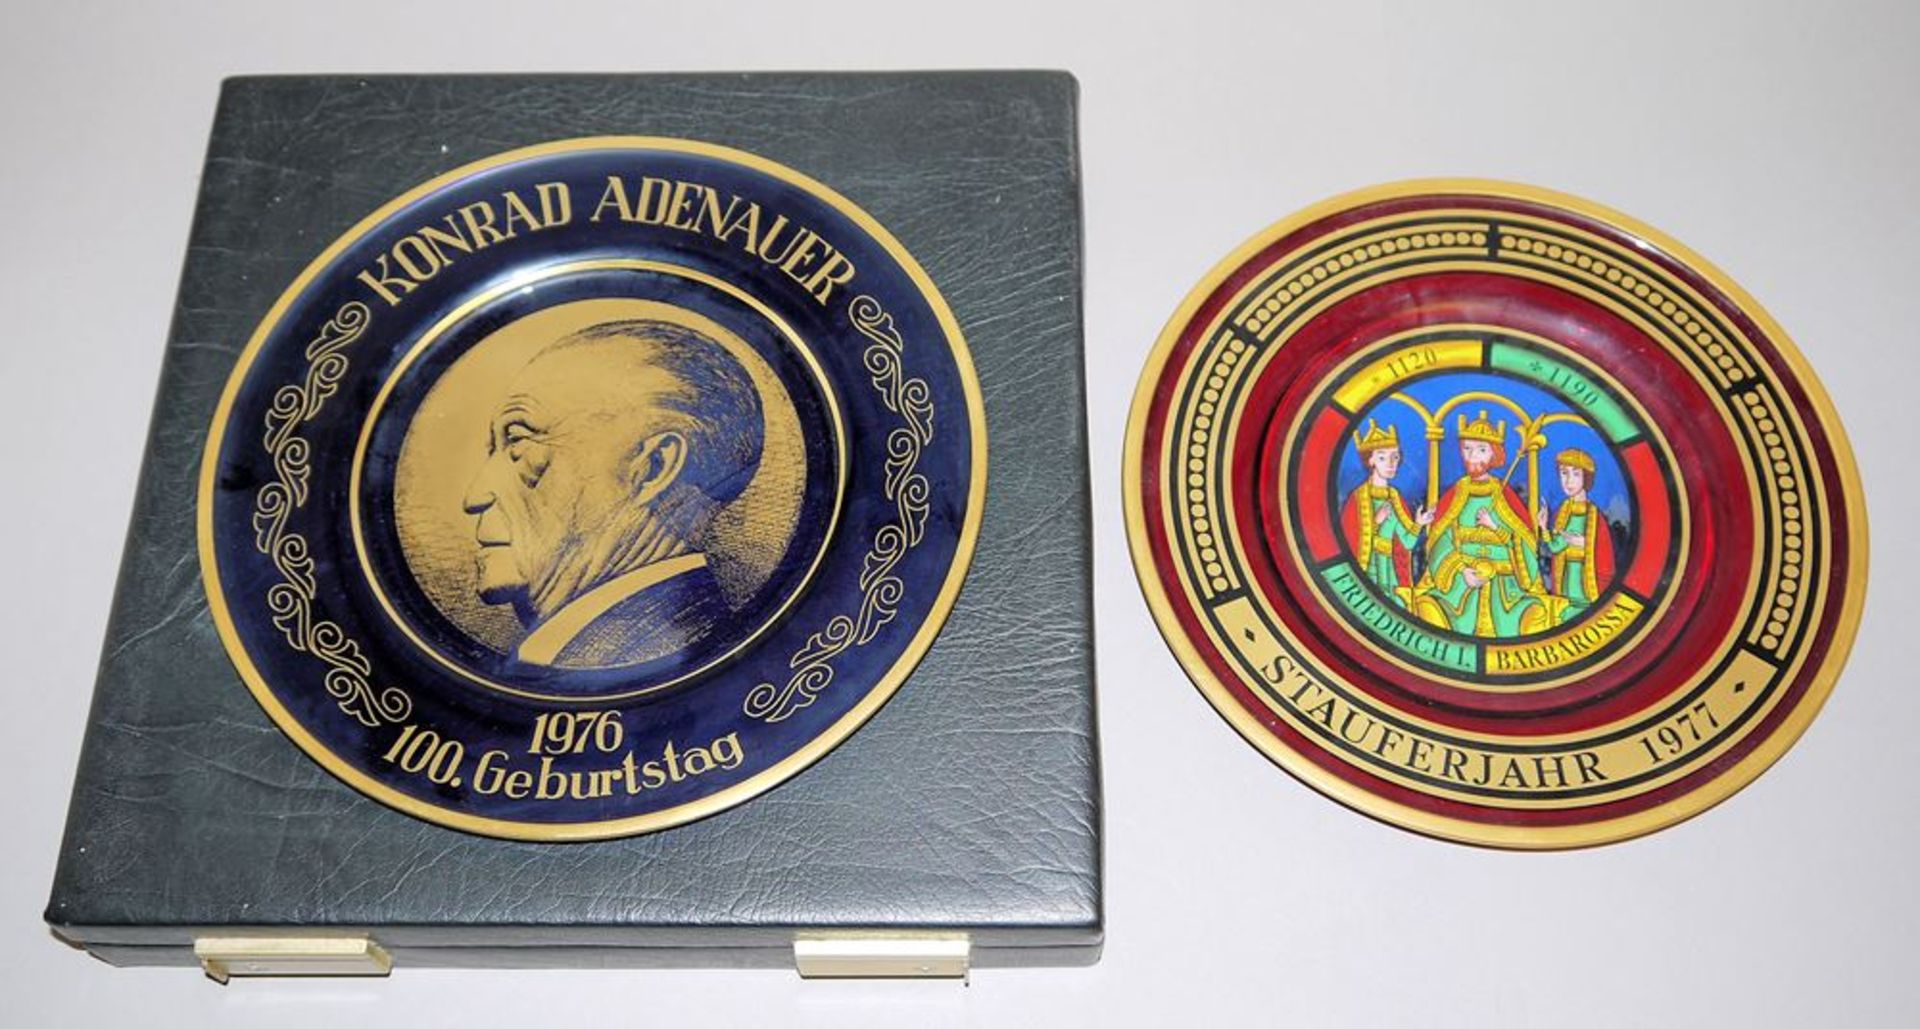 Zwei Glasteller "Staufferjahr 1977" und "100. Geburtstag Konrad Adenauer 1976",